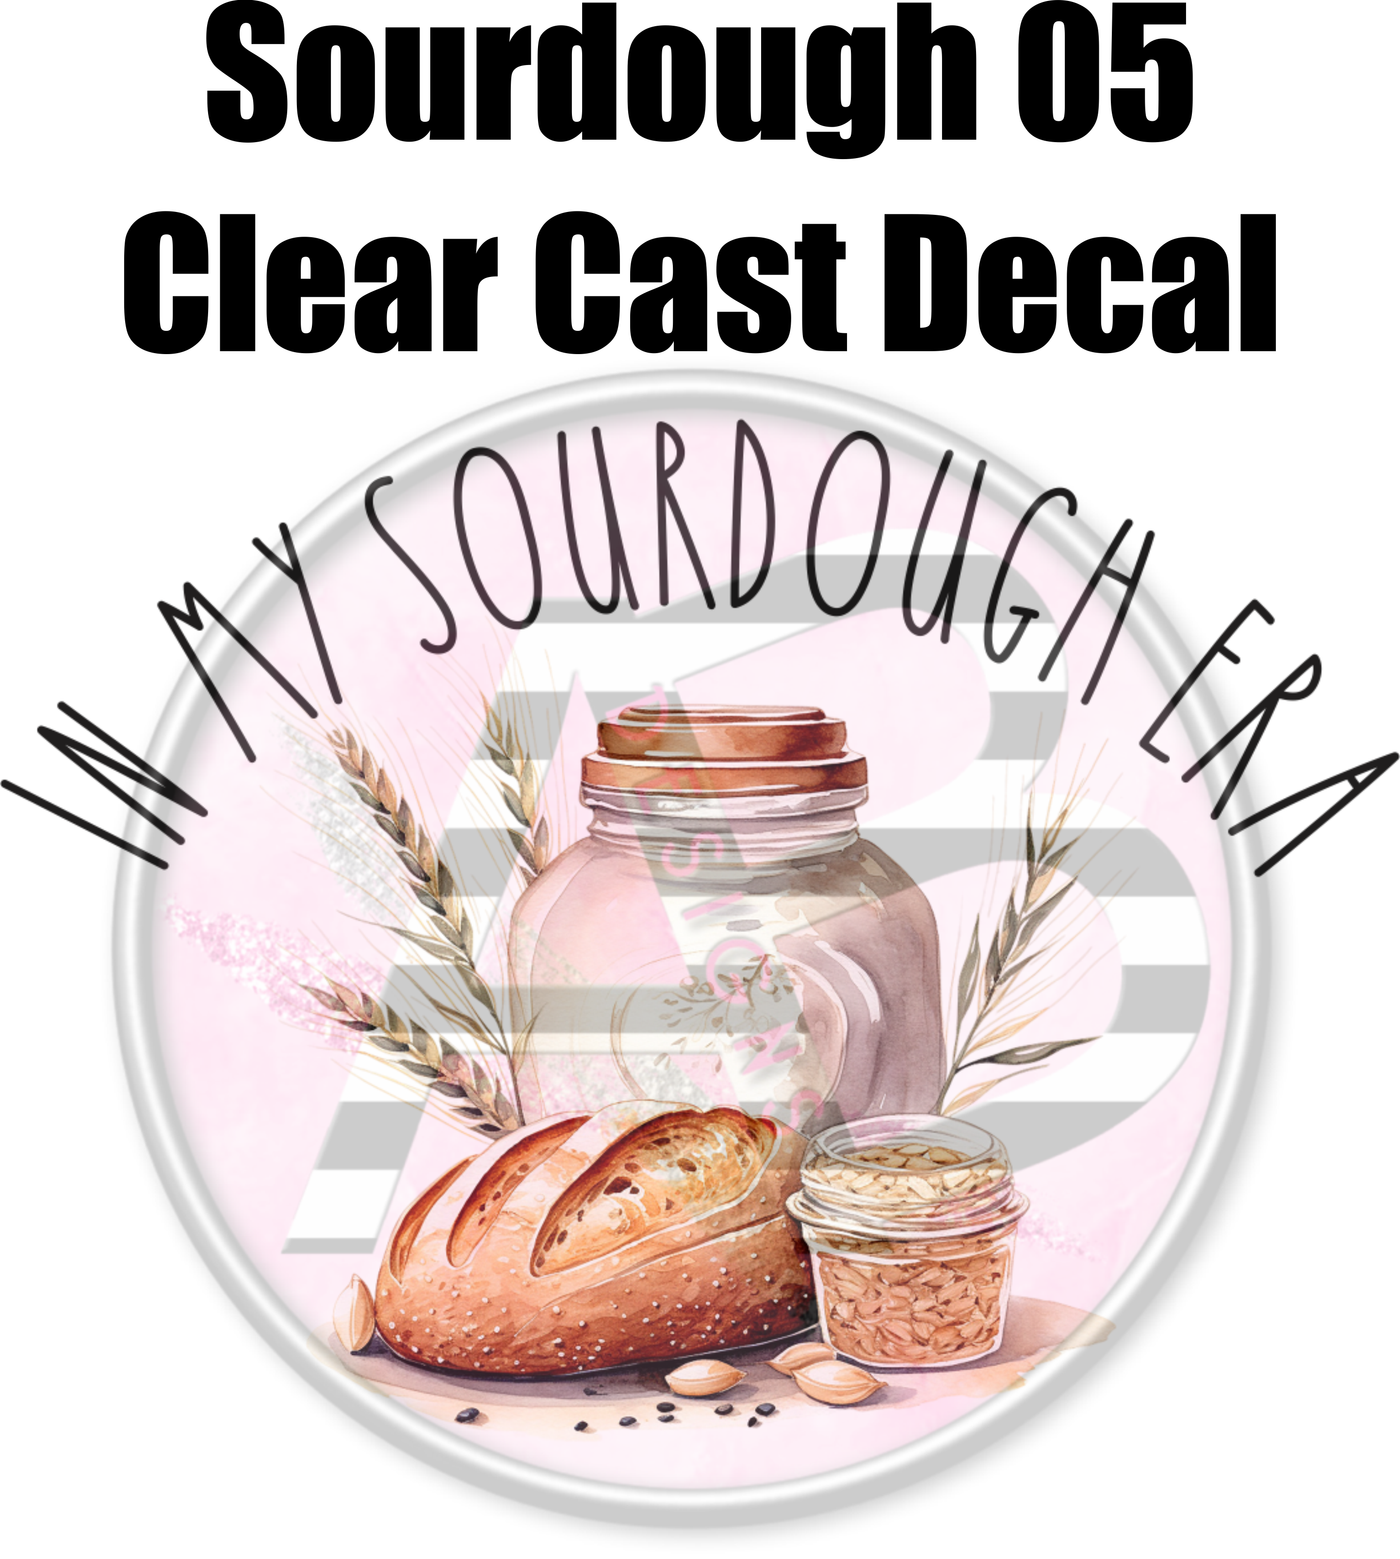 Sourdough 05 - Clear Cast Decal-383